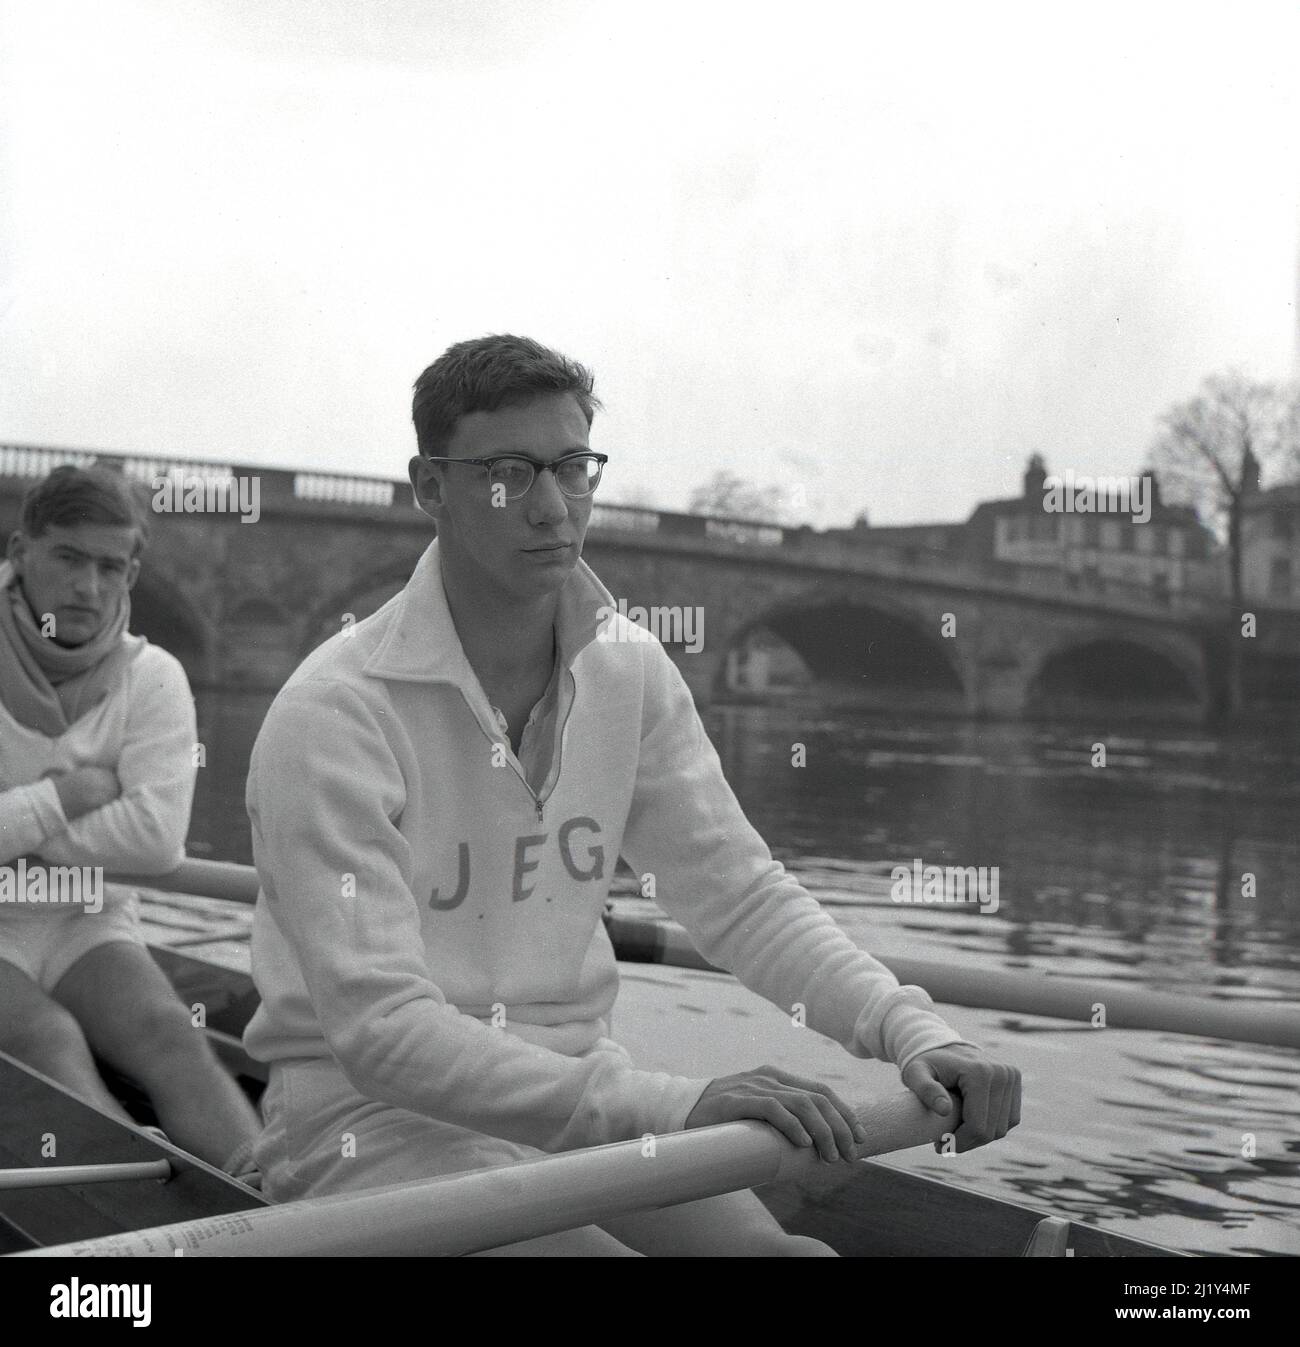 1961, photo historique montrant le rameur de l'université de Cambridge J. E. Gobbett de St Catharine's College assis dans le bateau de Cambridge sur la Tamise à Henley, en formation pour la célèbre course annuelle d'aviron, la course de bateaux d'Oxford & Cambridge. Ses initiales J.E.G sont brodrées sur son haut de survêtement en coton. Banque D'Images